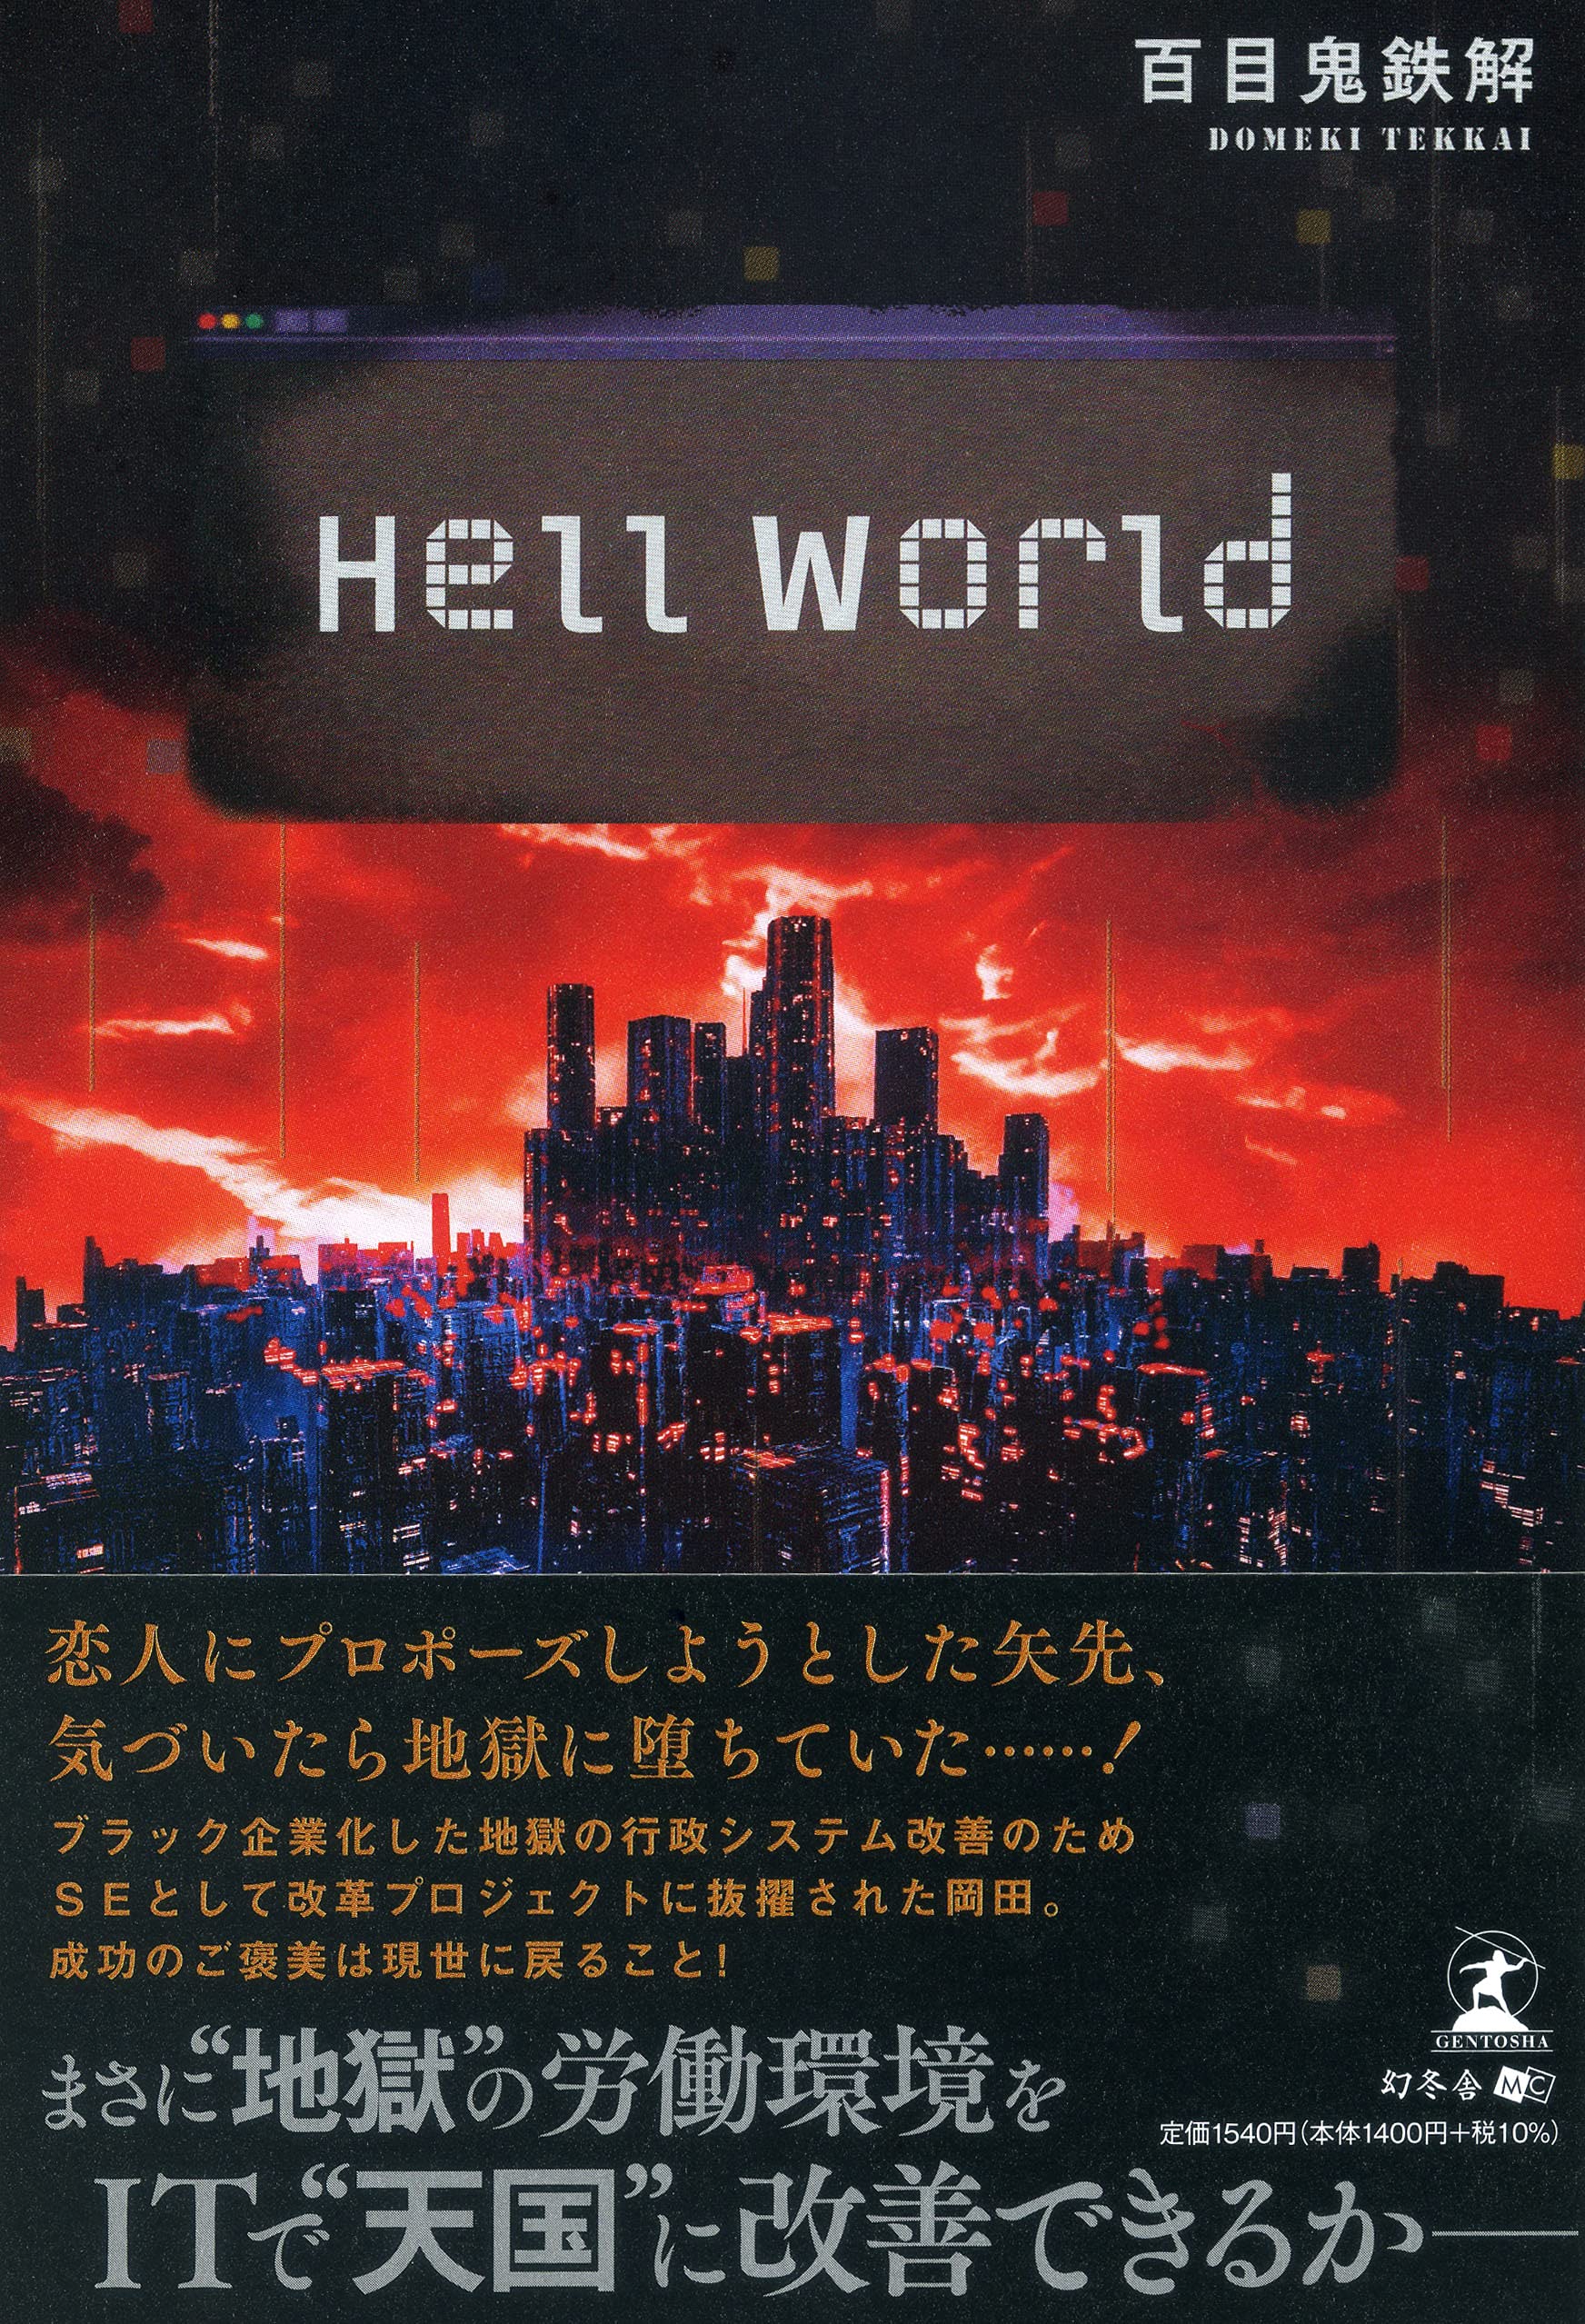 Hell World